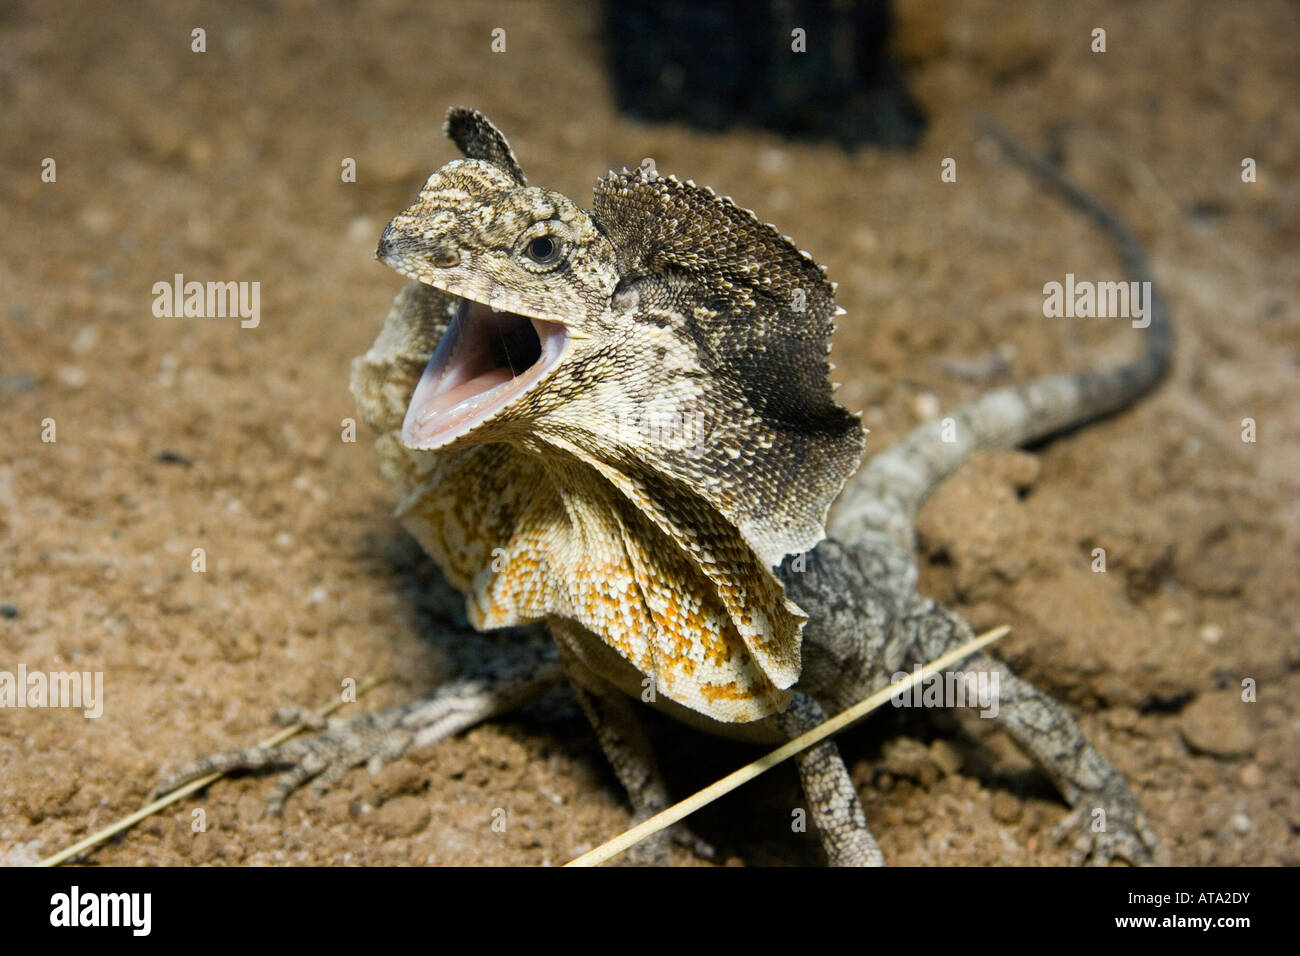 Die Bedrohung durch Anzeige der gewundene Eidechse, Chlamydosaurus Kingii, Australien. Stockfoto